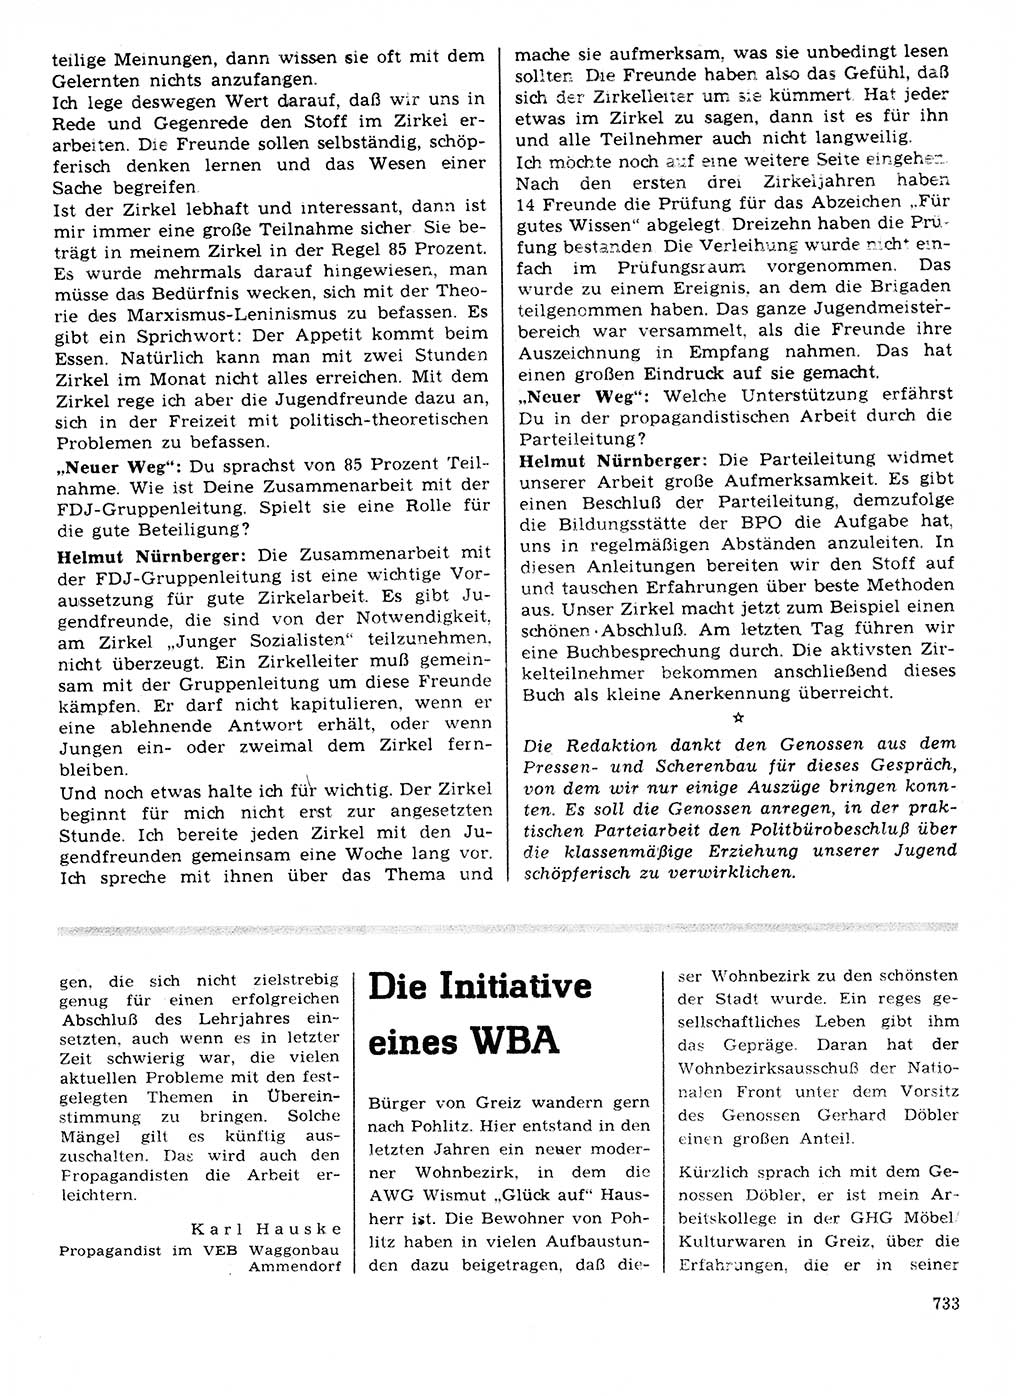 Neuer Weg (NW), Organ des Zentralkomitees (ZK) der SED (Sozialistische Einheitspartei Deutschlands) für Fragen des Parteilebens, 21. Jahrgang [Deutsche Demokratische Republik (DDR)] 1966, Seite 733 (NW ZK SED DDR 1966, S. 733)